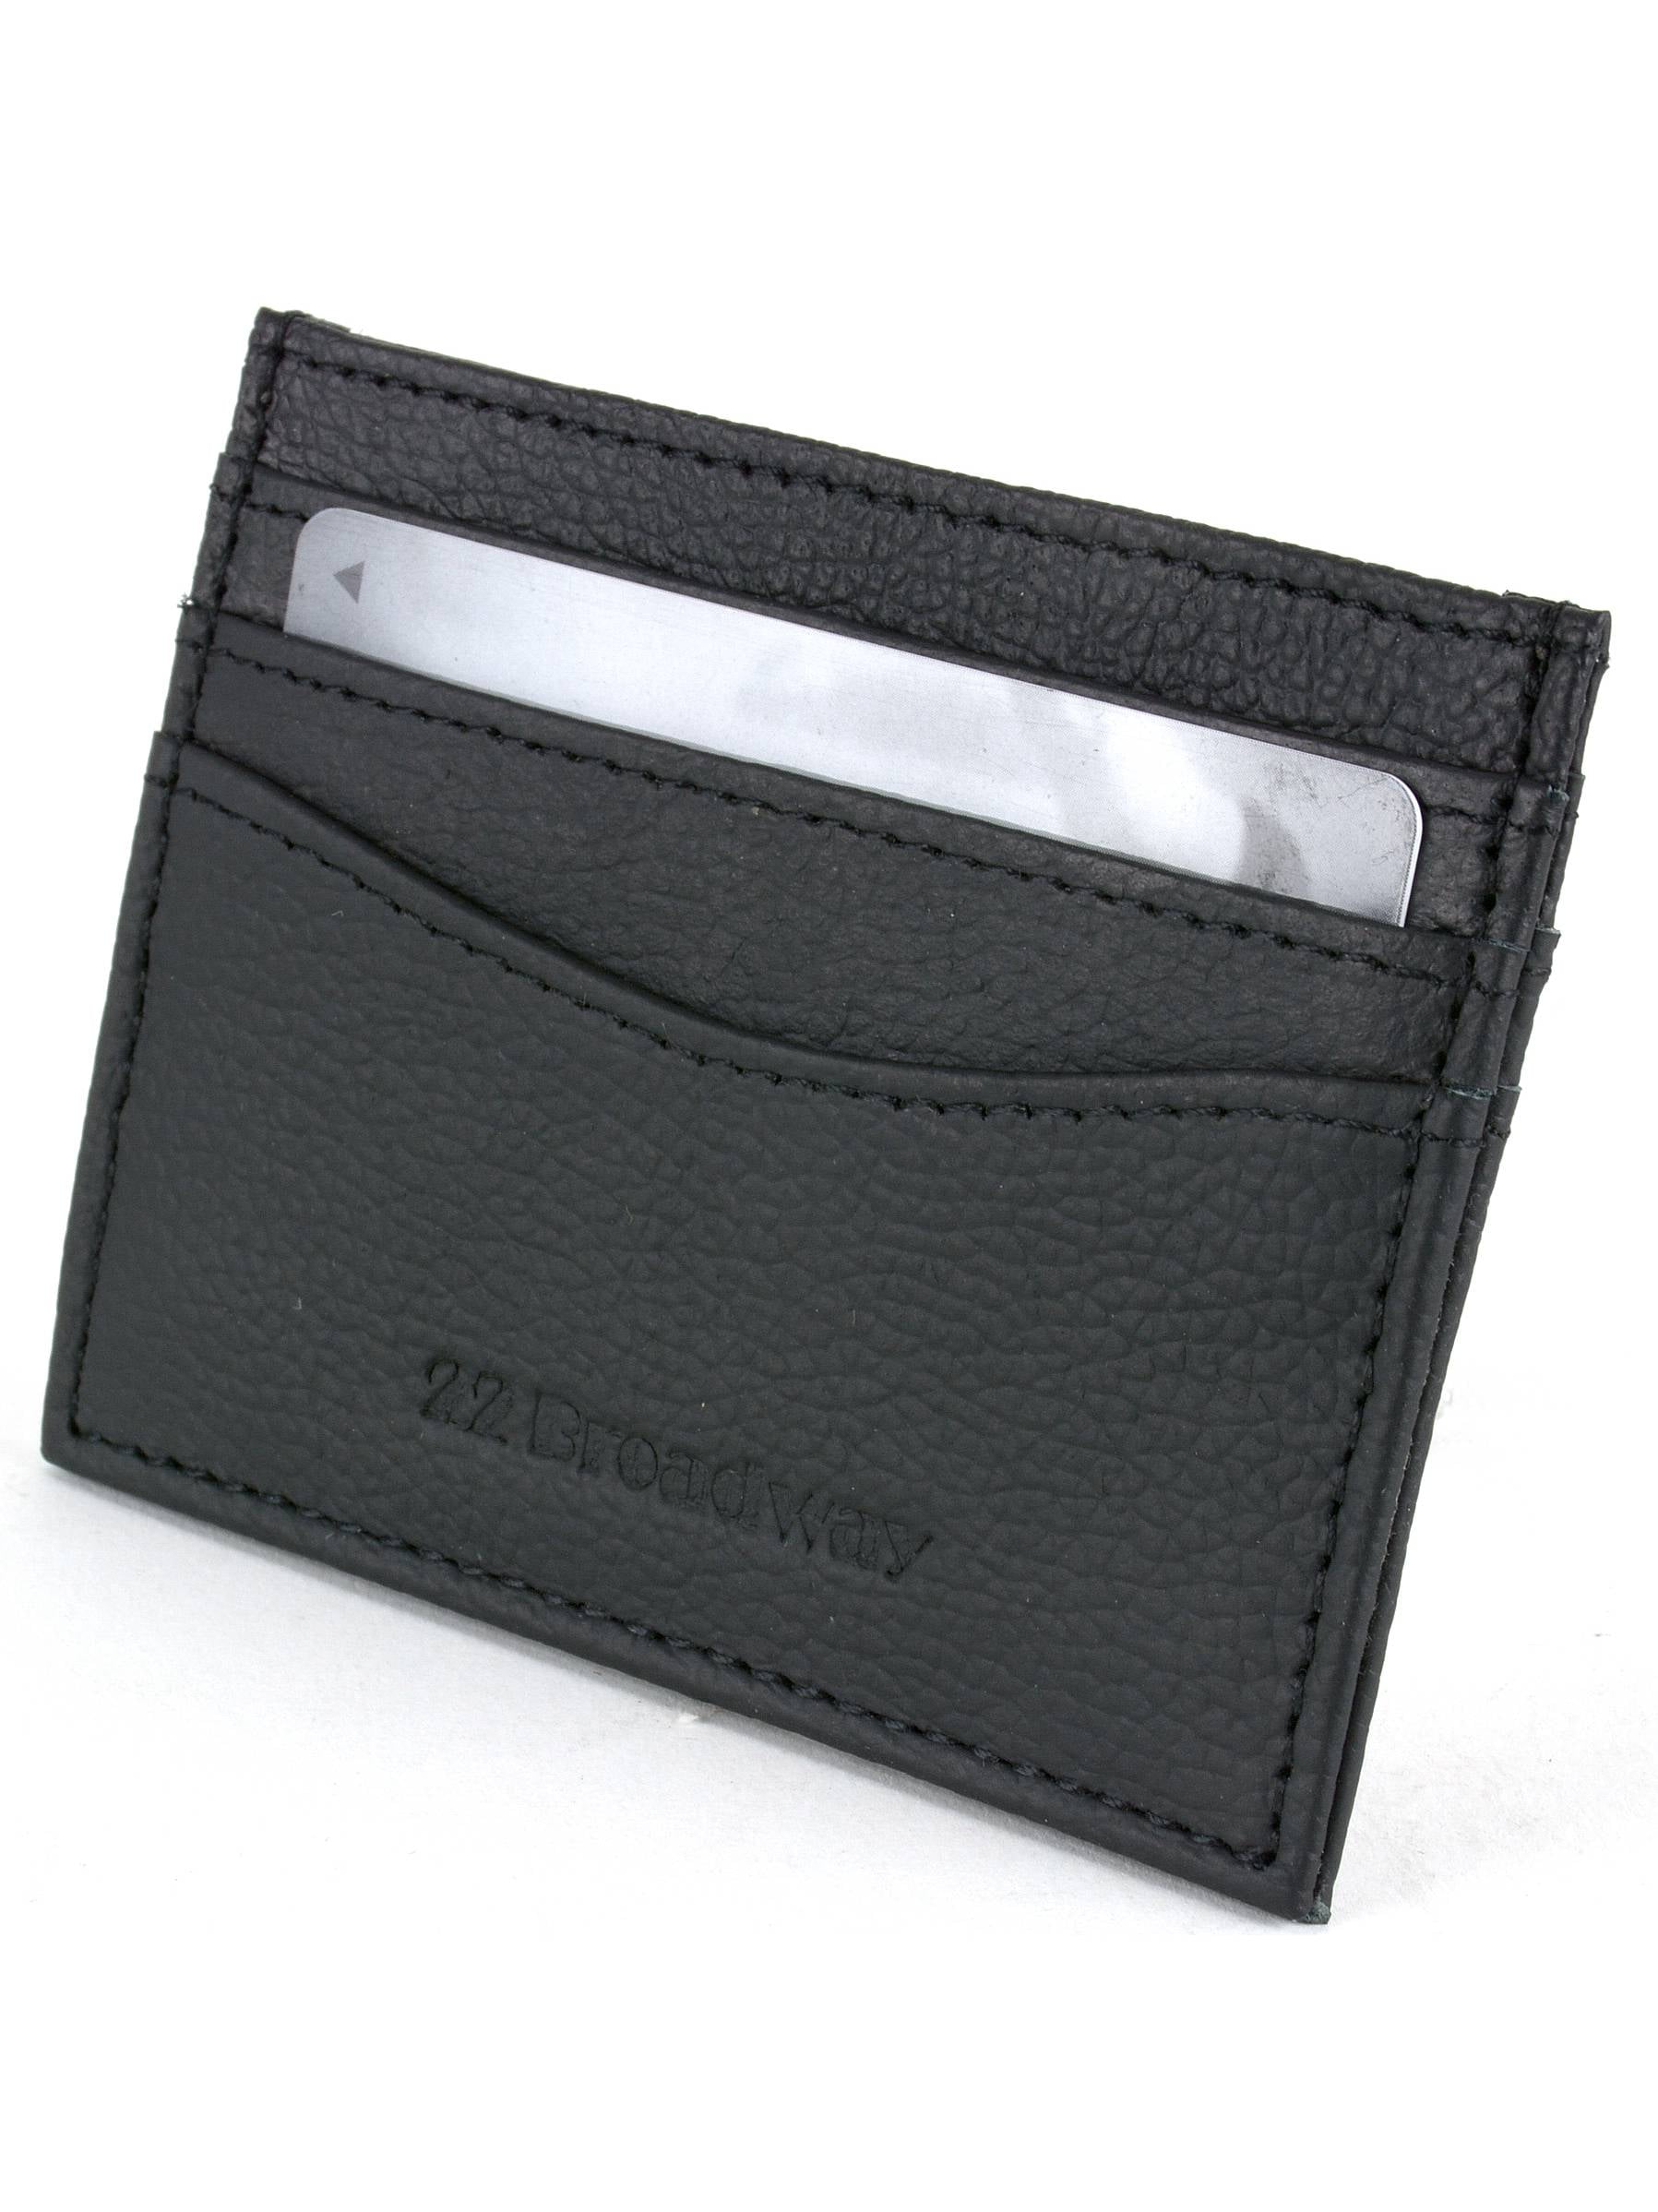 22 Broadway - Front Pocket Wallet Minimalist Card Case 7 Pocket for ...